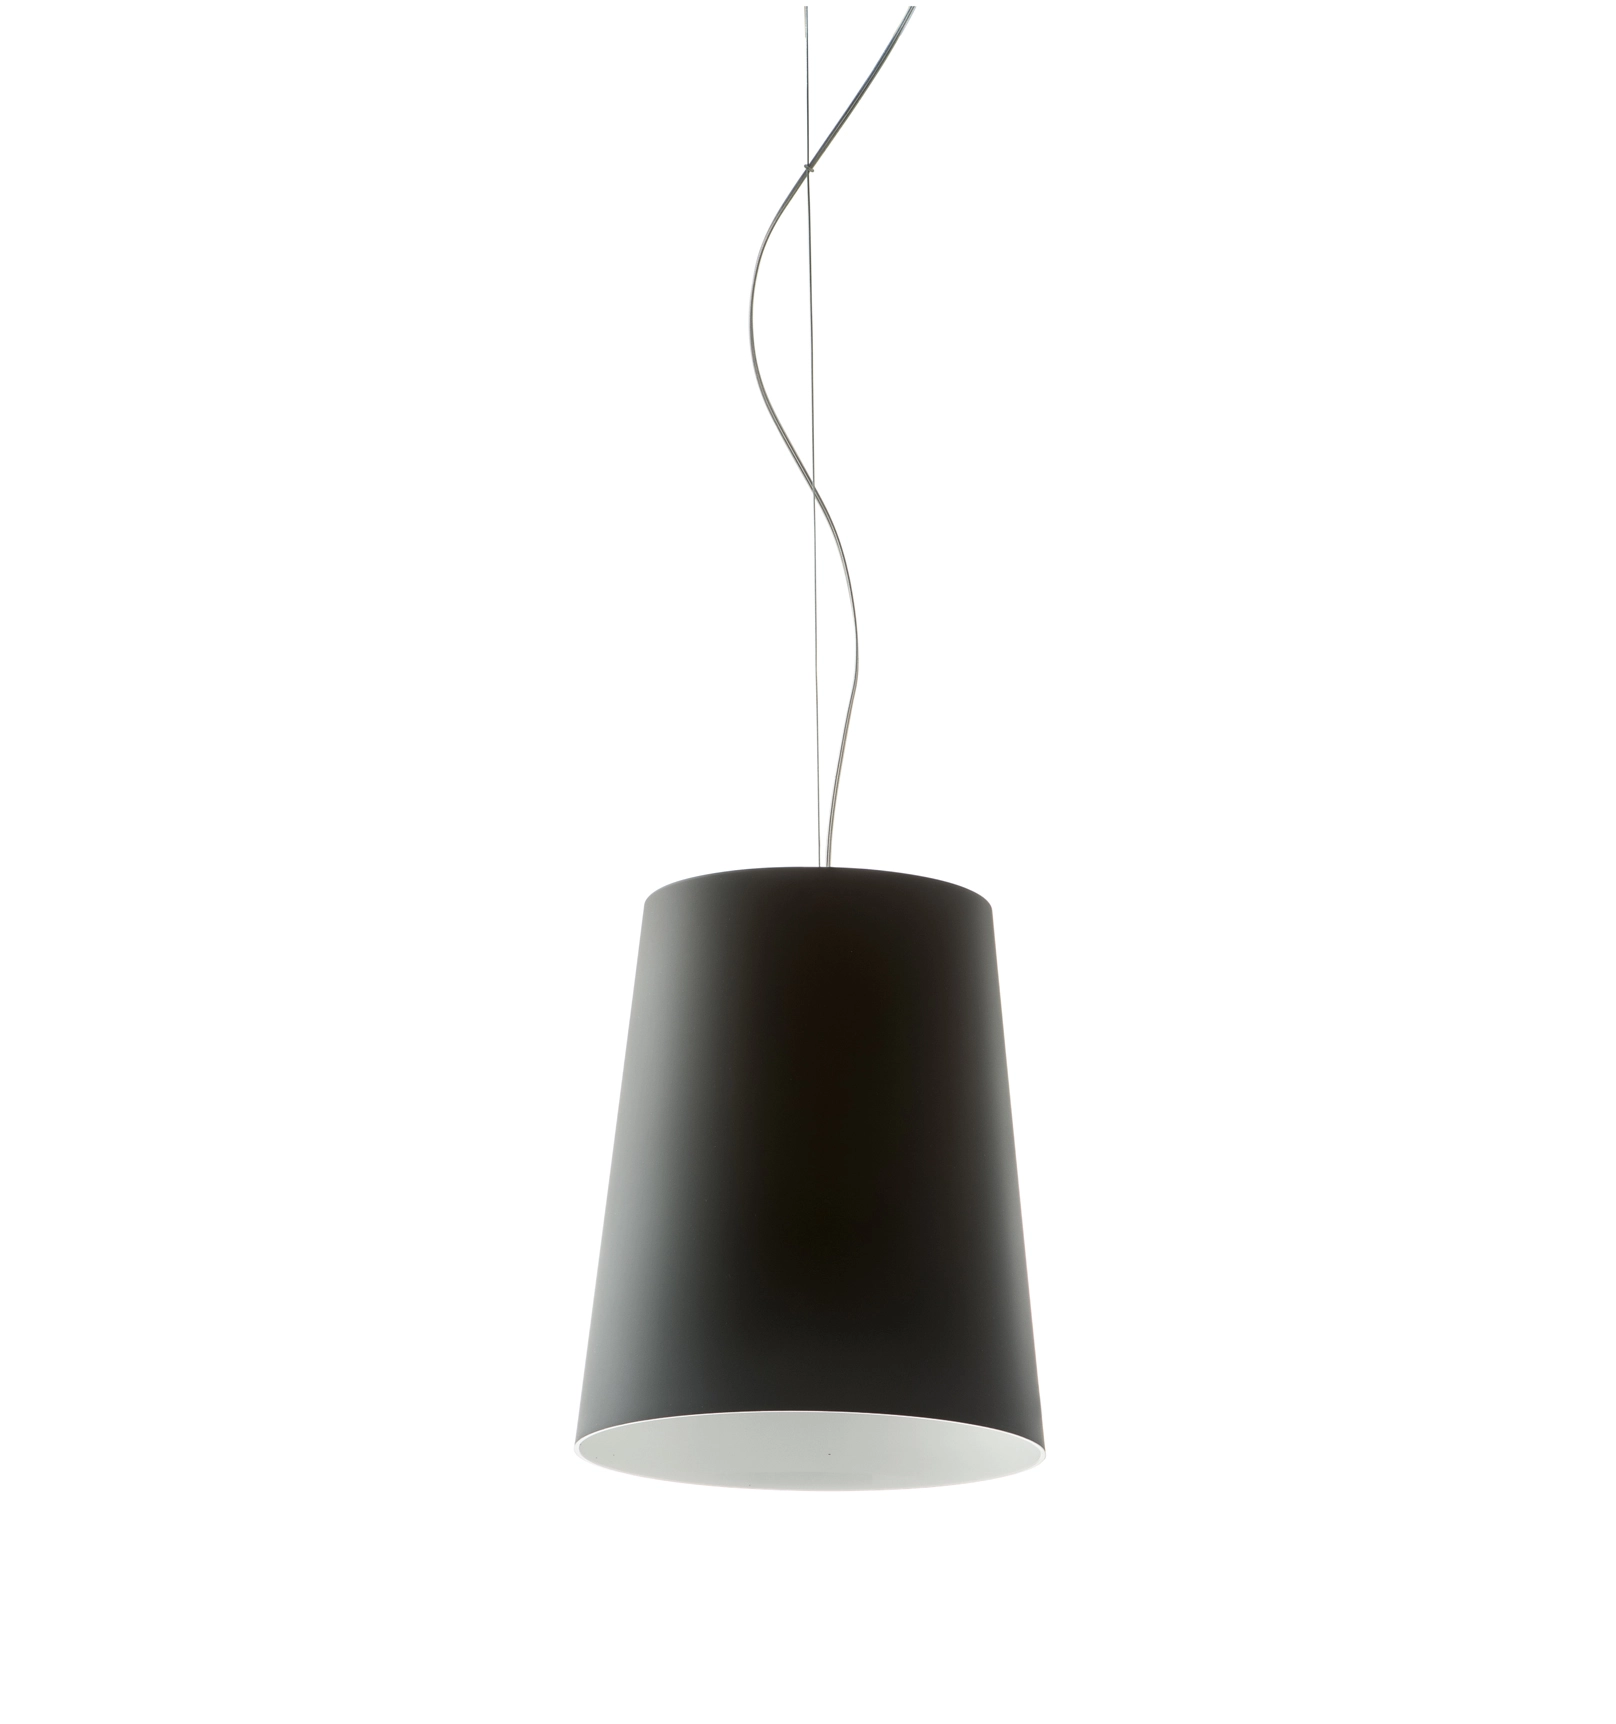 Hängelampe L001S/A SOFT - Design Lampe von Pedrali Soft-touch BE - beige weiss 4,0 Meter